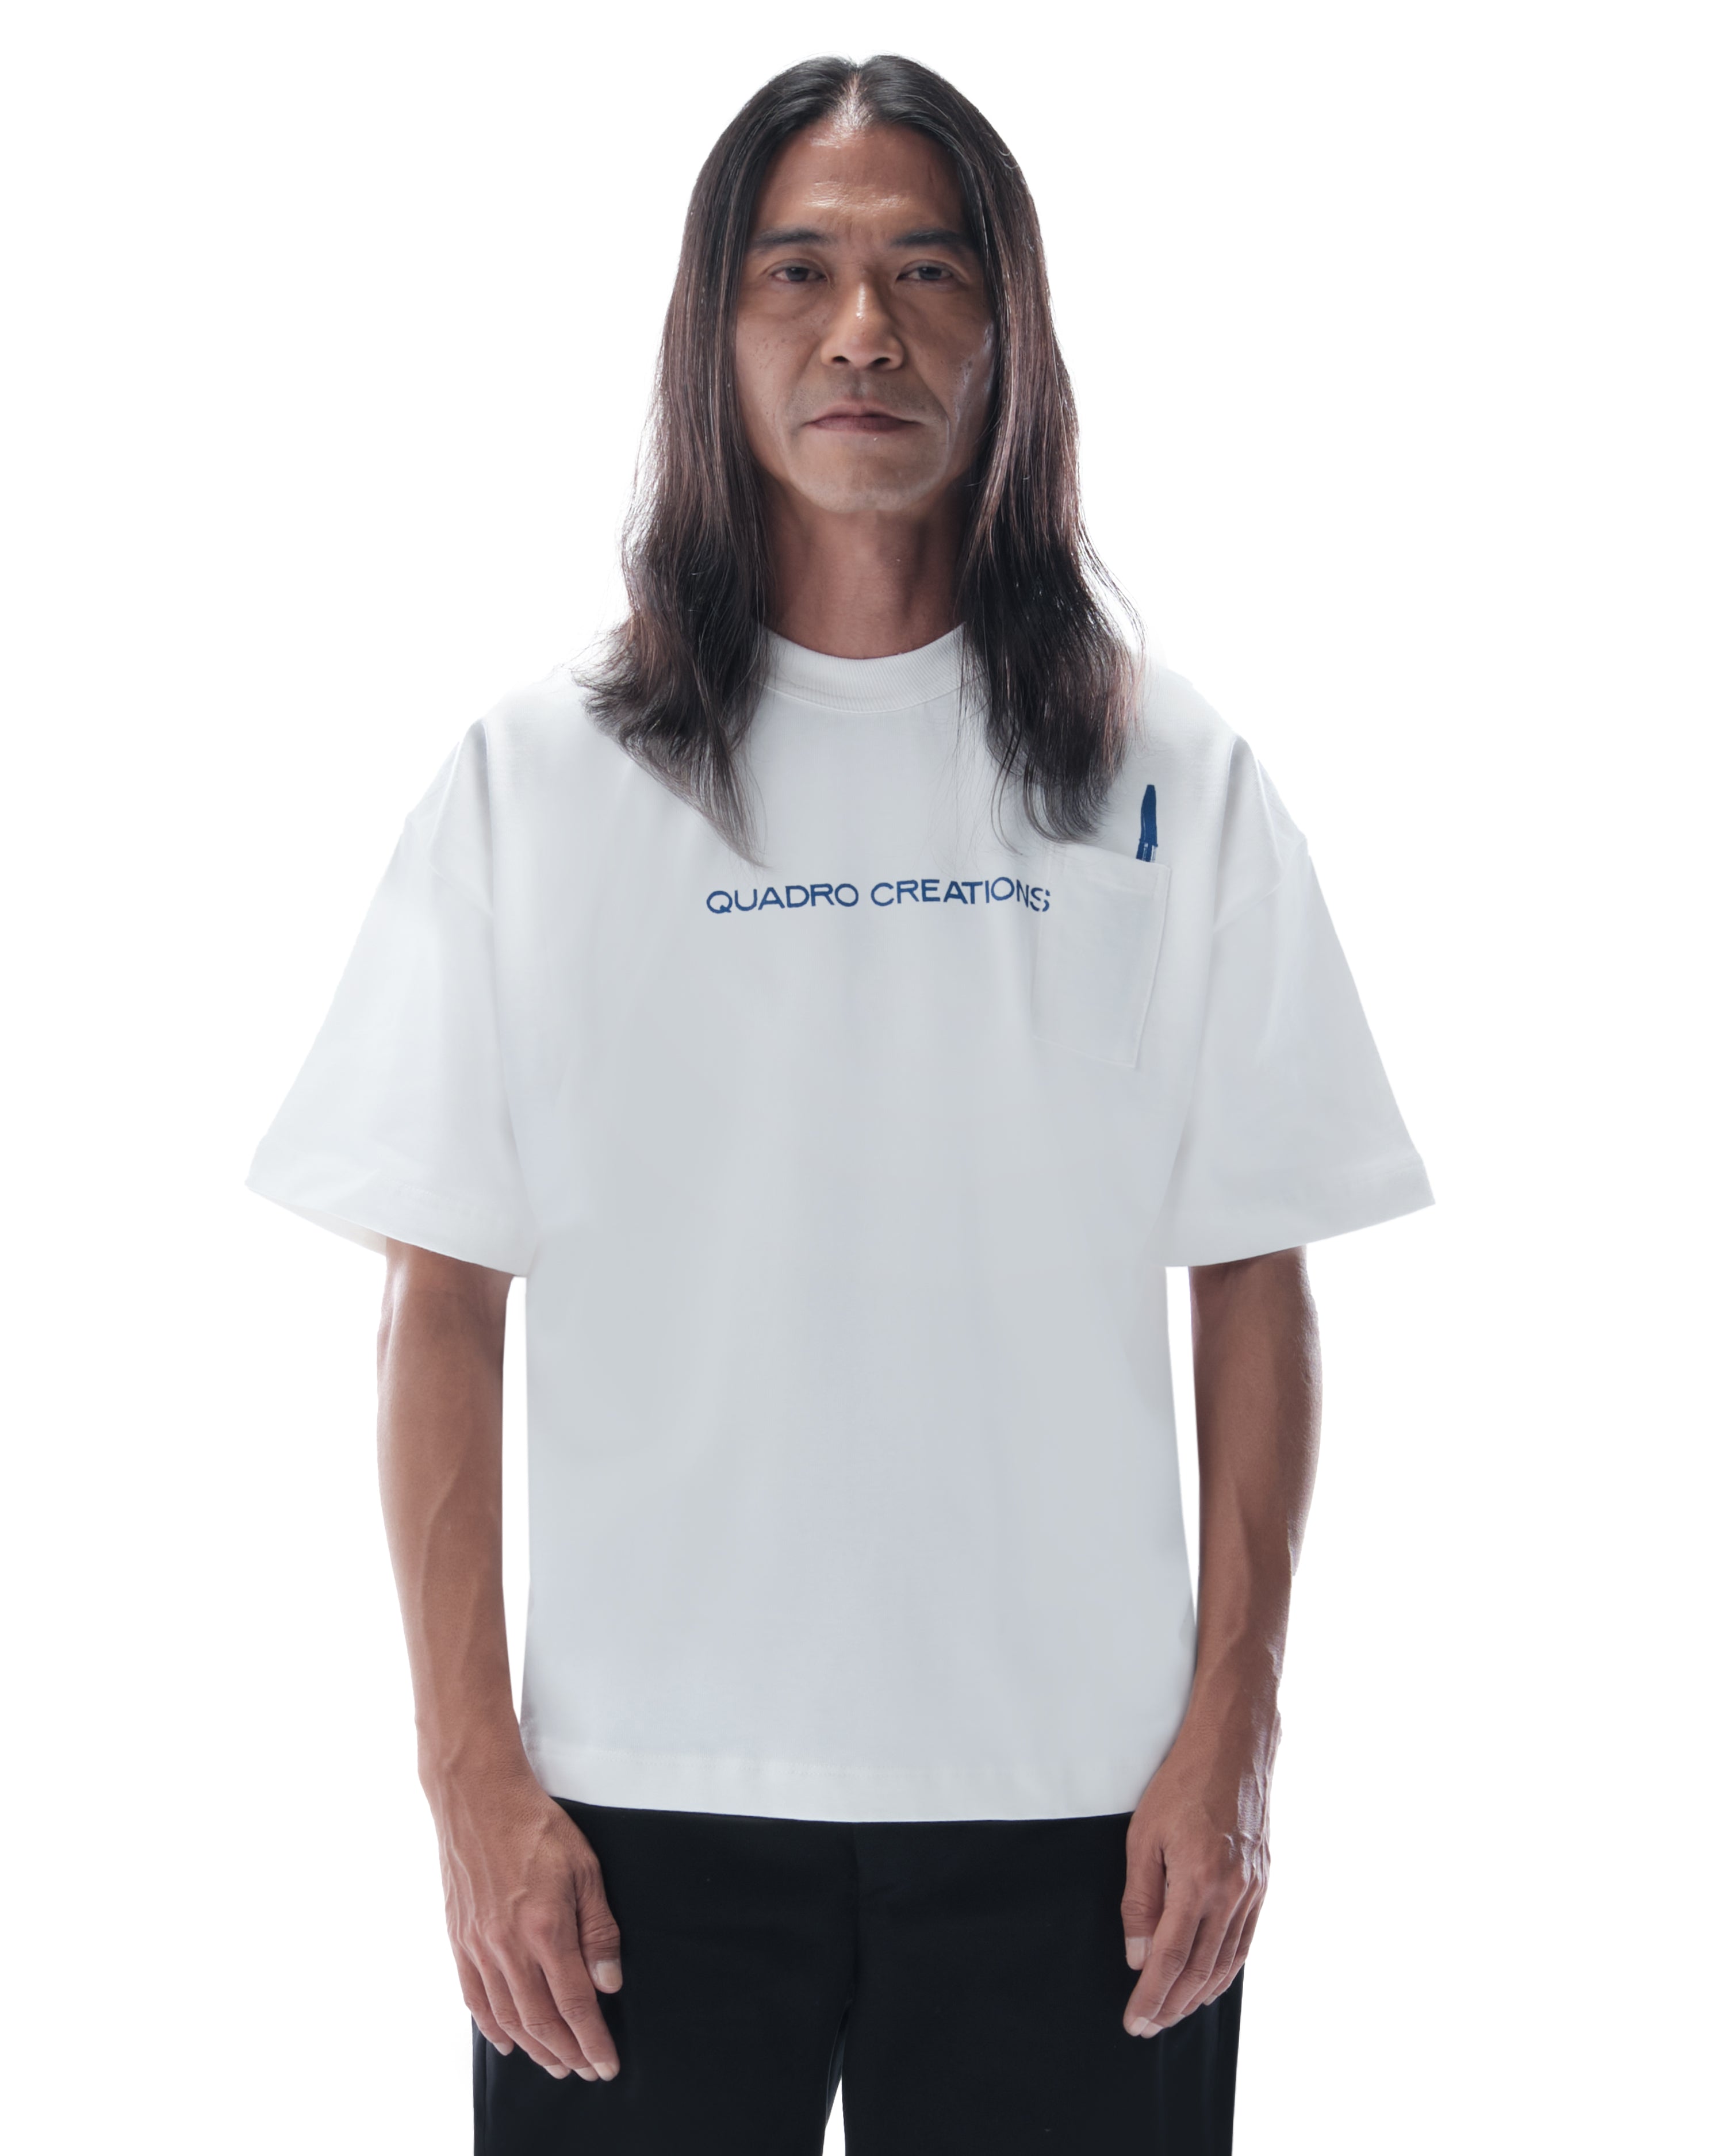 Camiseta Quadro Creations QC Staff Off White